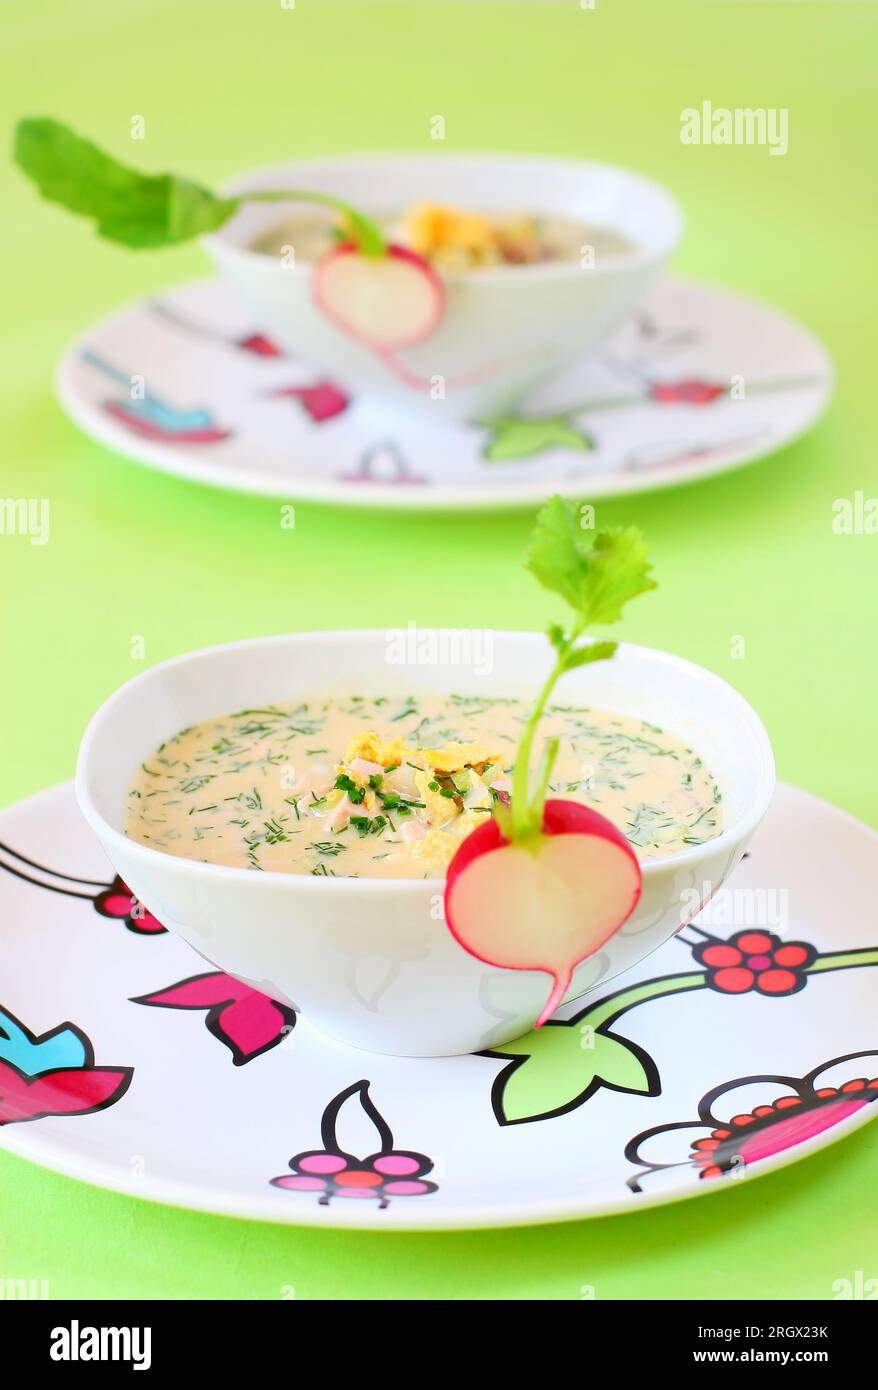 Sommerliche kalte Suppe (Oroshka) mit Gemüse, Fleisch und Eiern Stockfoto